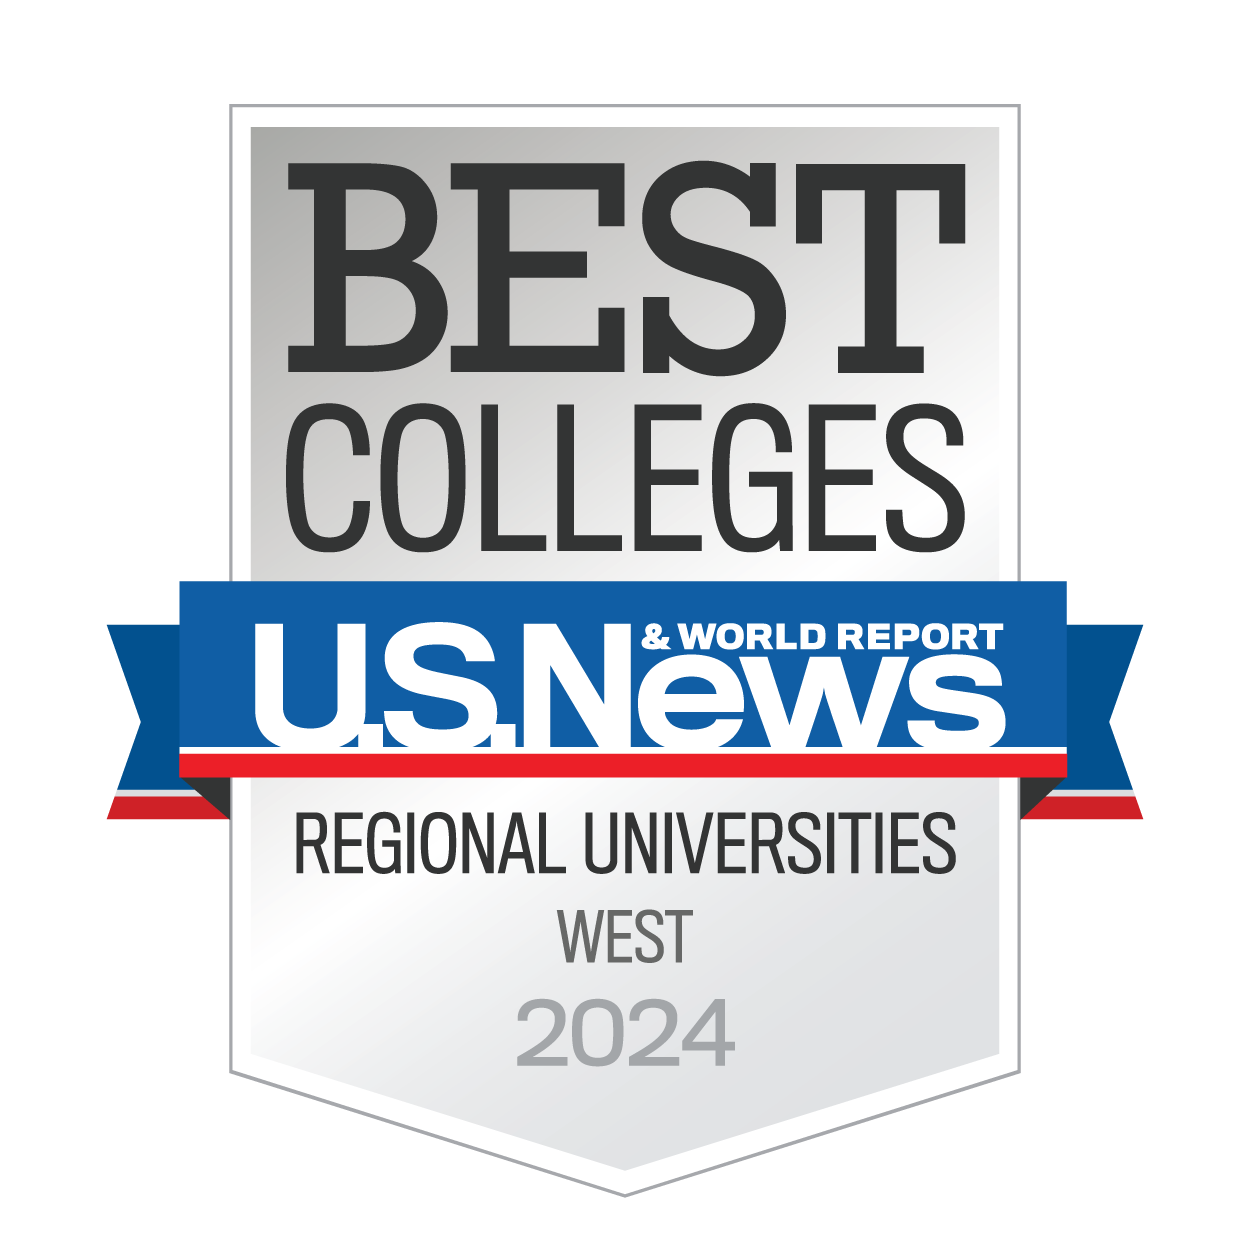 Best Colleges U.S. News & World Report Regional Universities West 2024